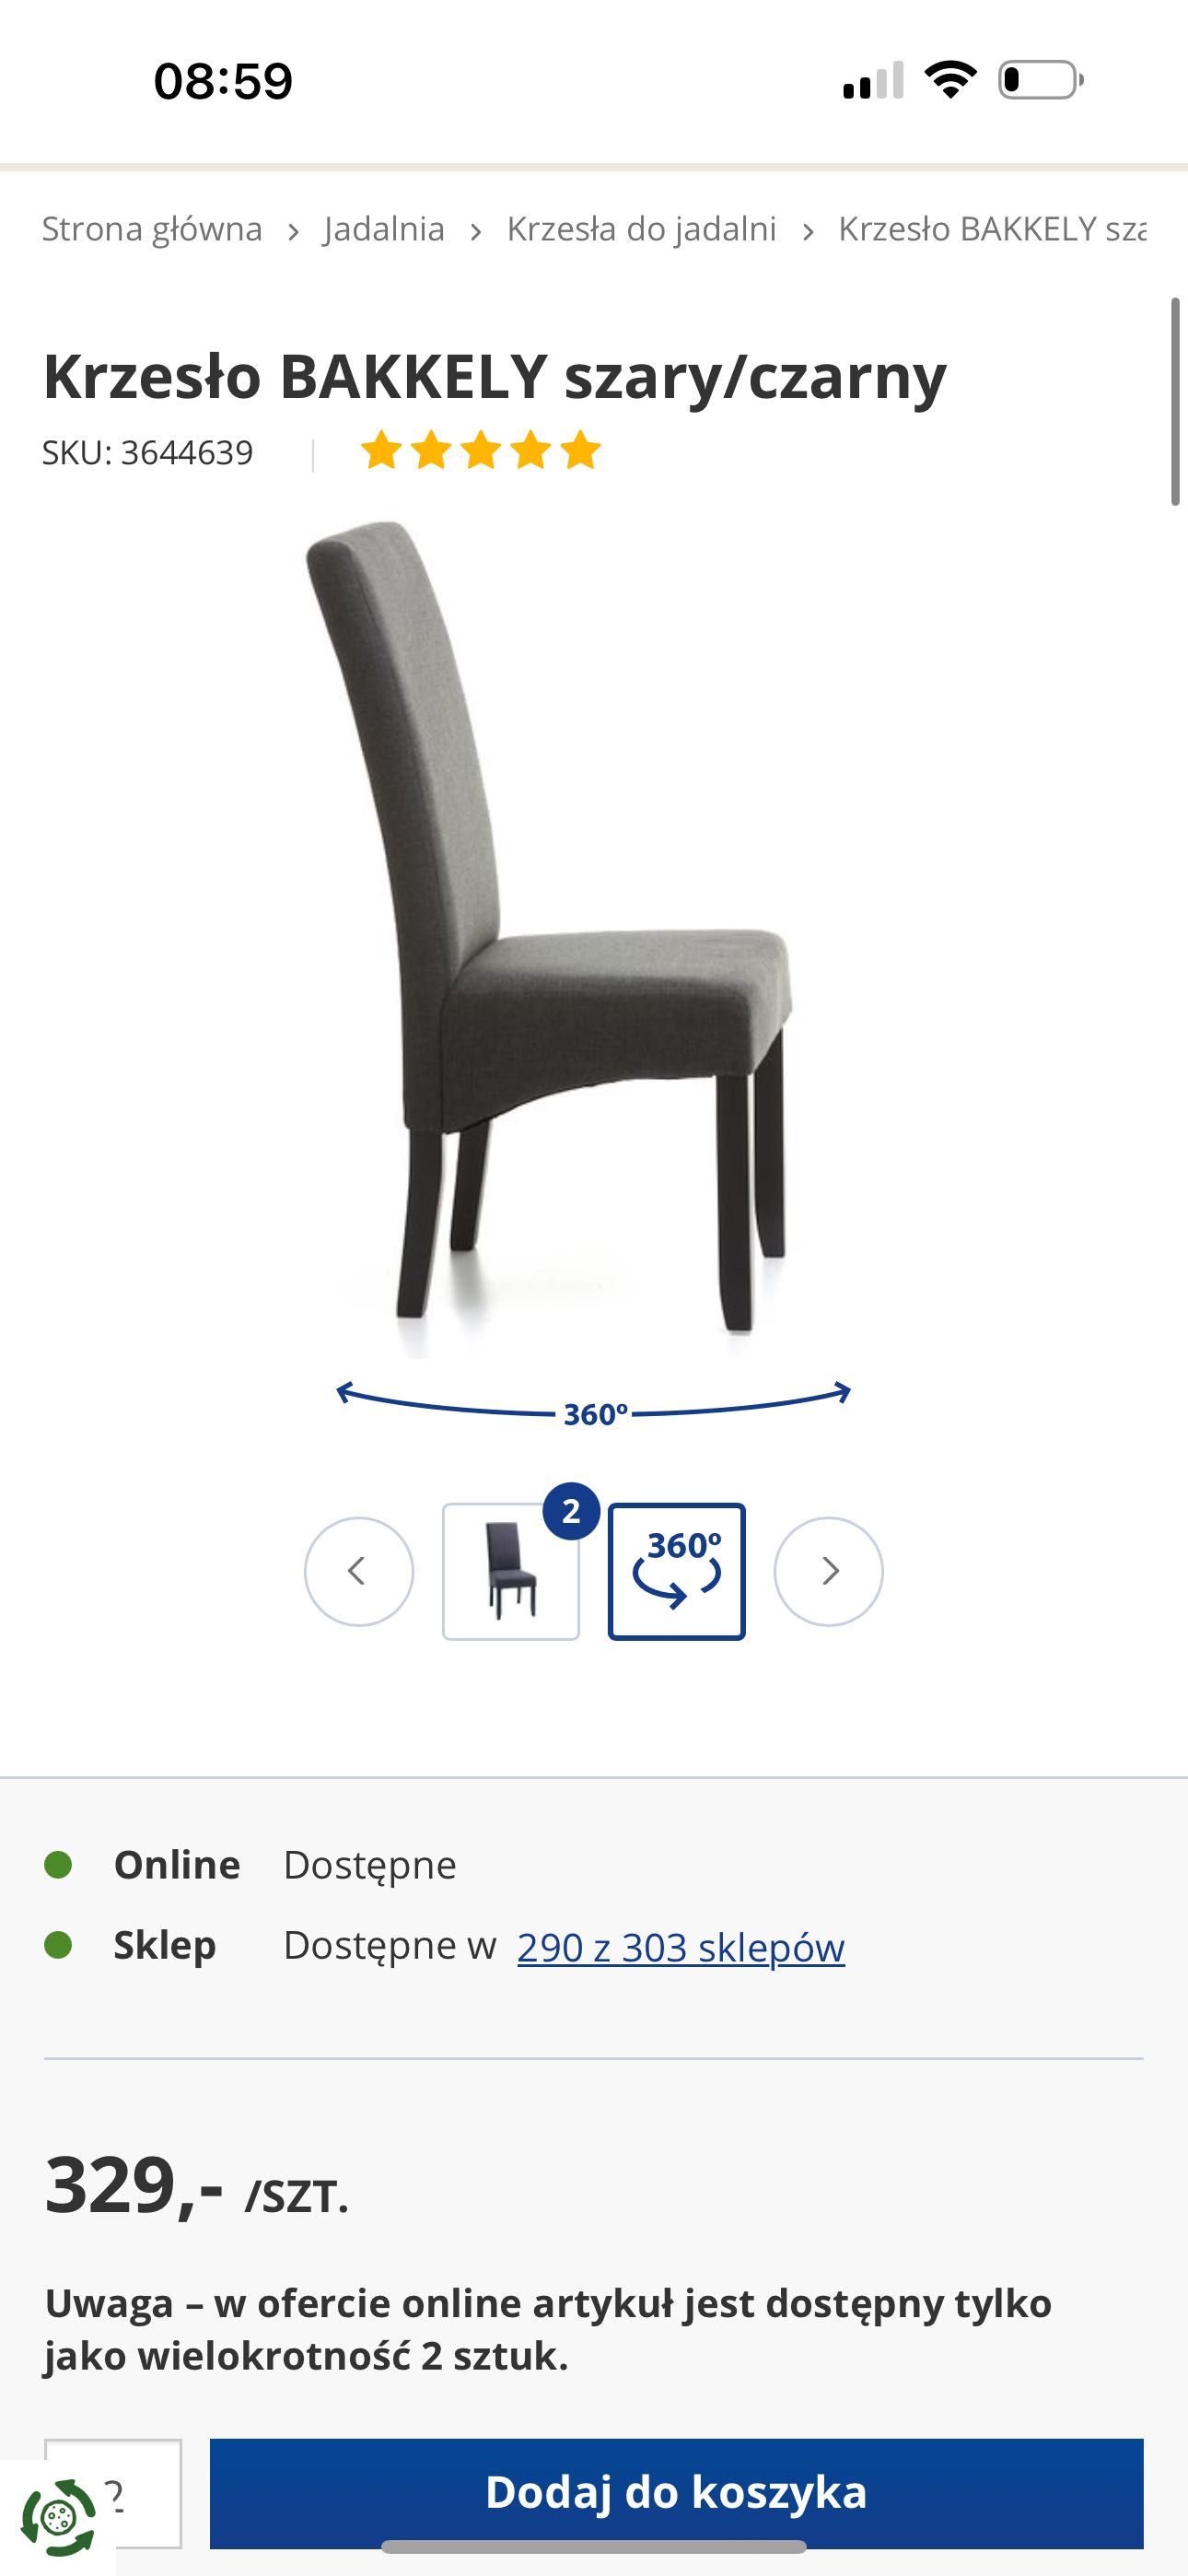 Krzesło BAKKELY szary/czarny - 6 szt